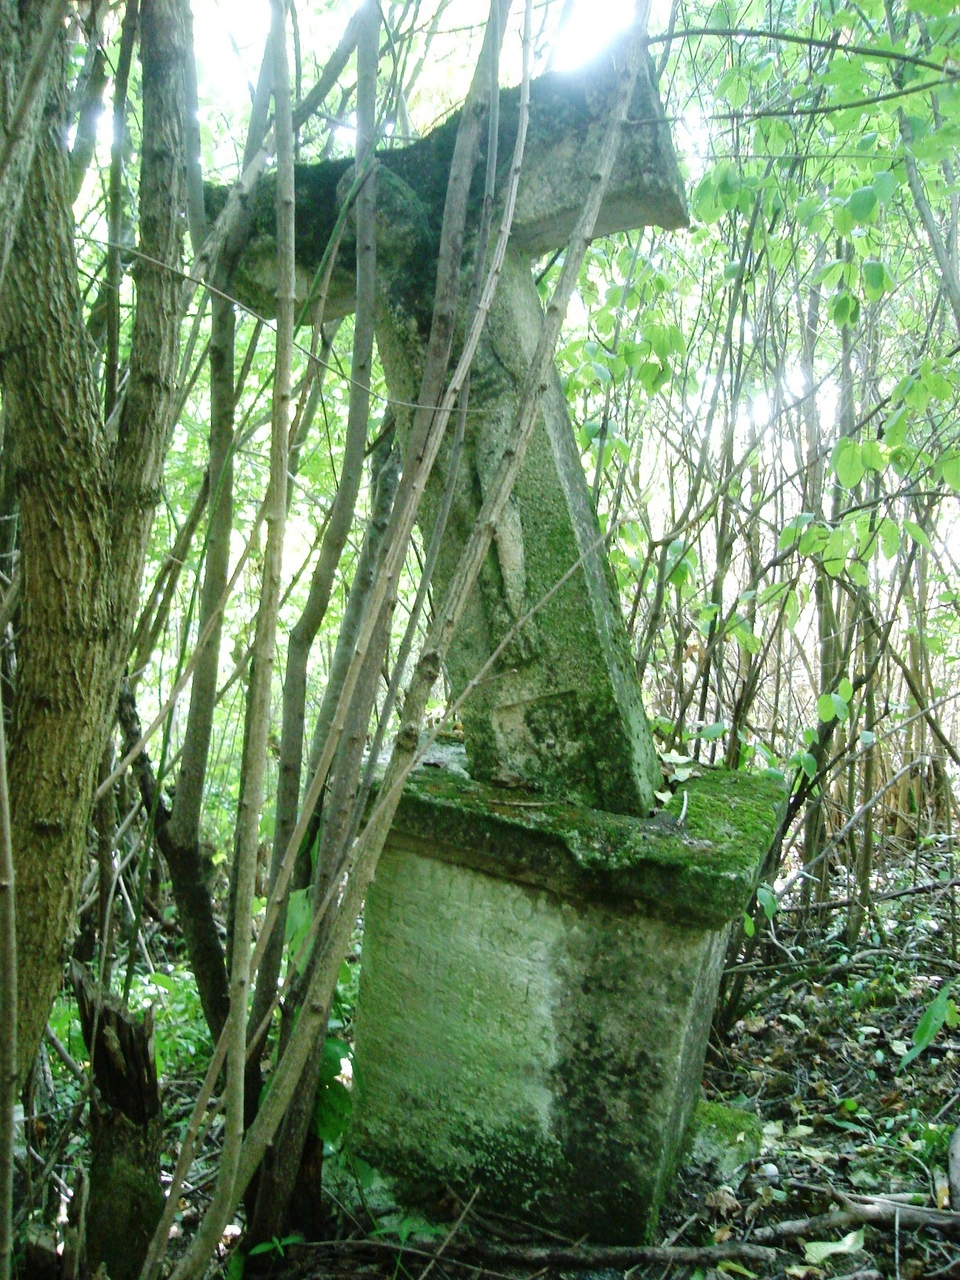 Tombstone of Rozalia Unioski, Czerwonogrod cemetery, state from 2005